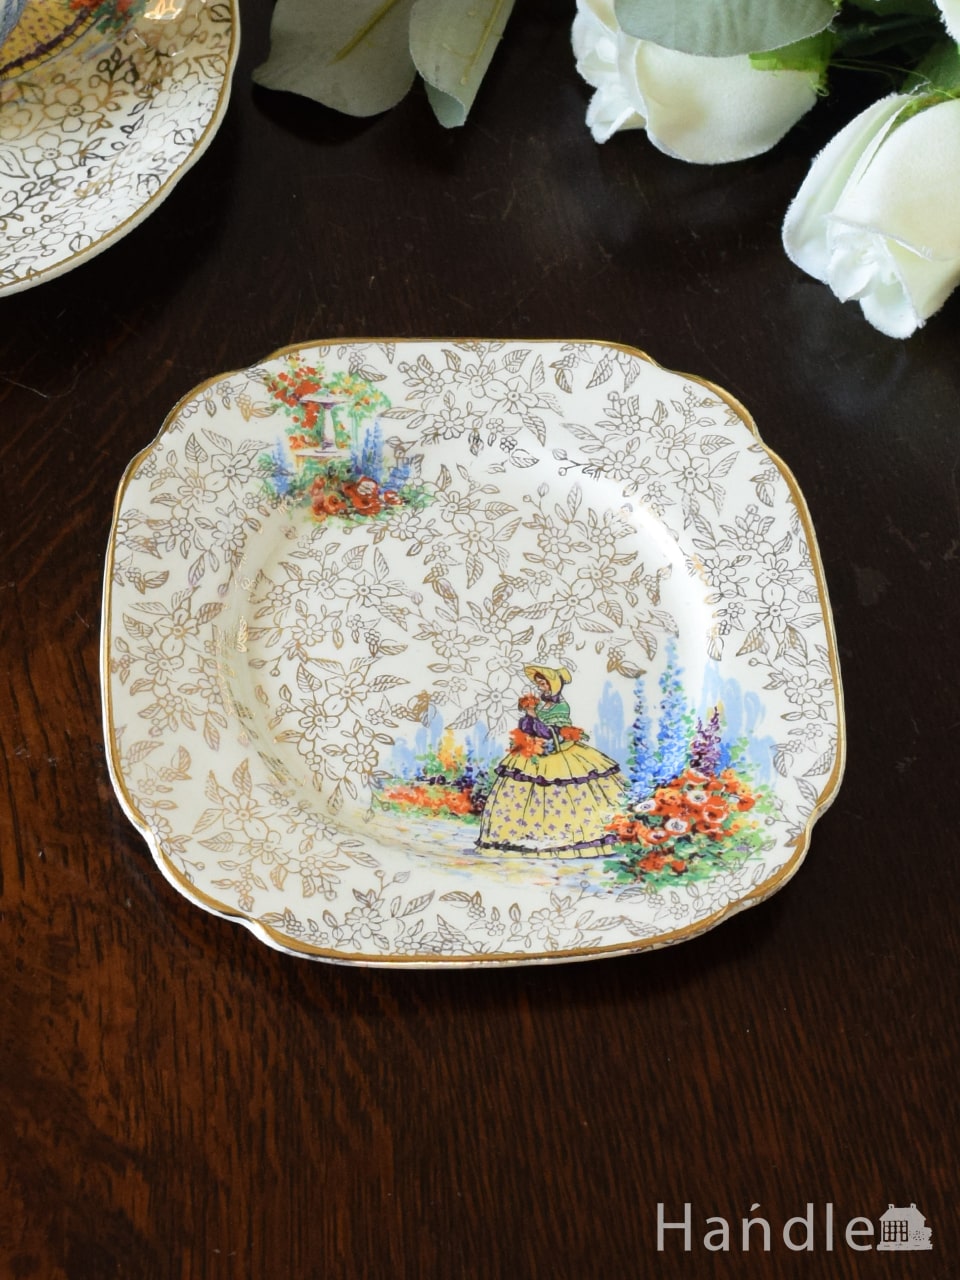 チンツ柄がキラキラ輝くアンティークの皿、クリノリンレディが描かれたスクエアプレート (m-7650-z)